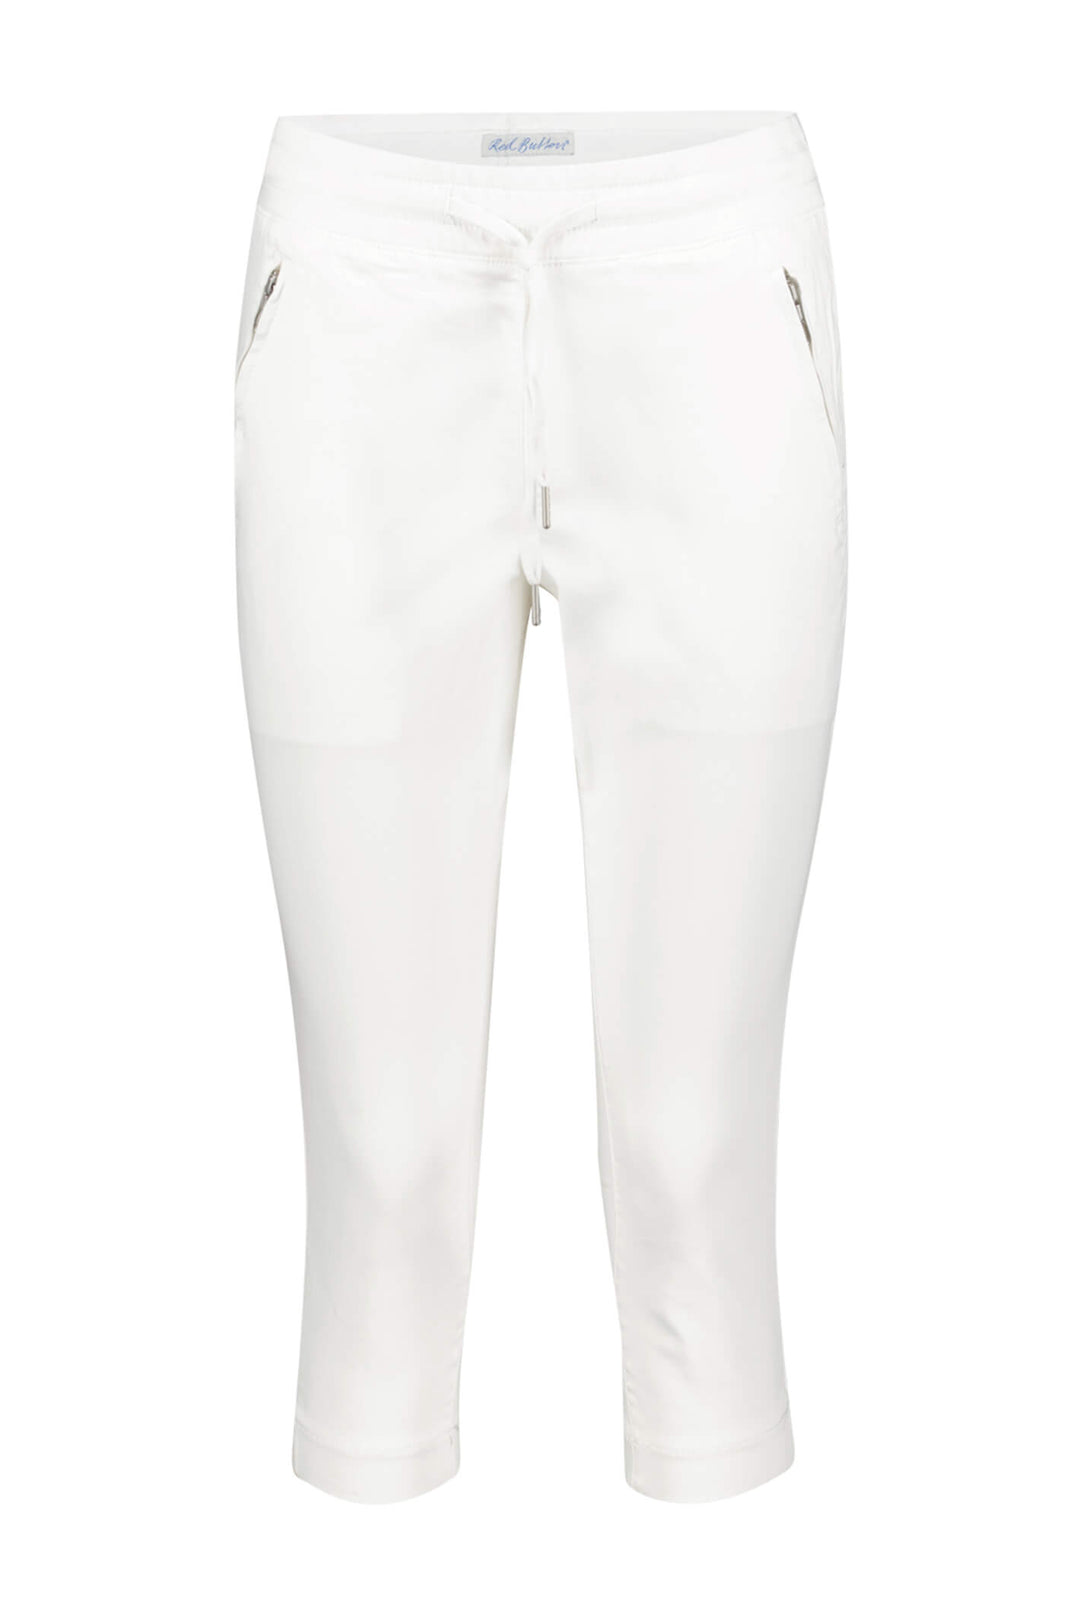 Red Button SRB4034 Tessy White Capri Jogger Trousers - Olivia Grace Fashion